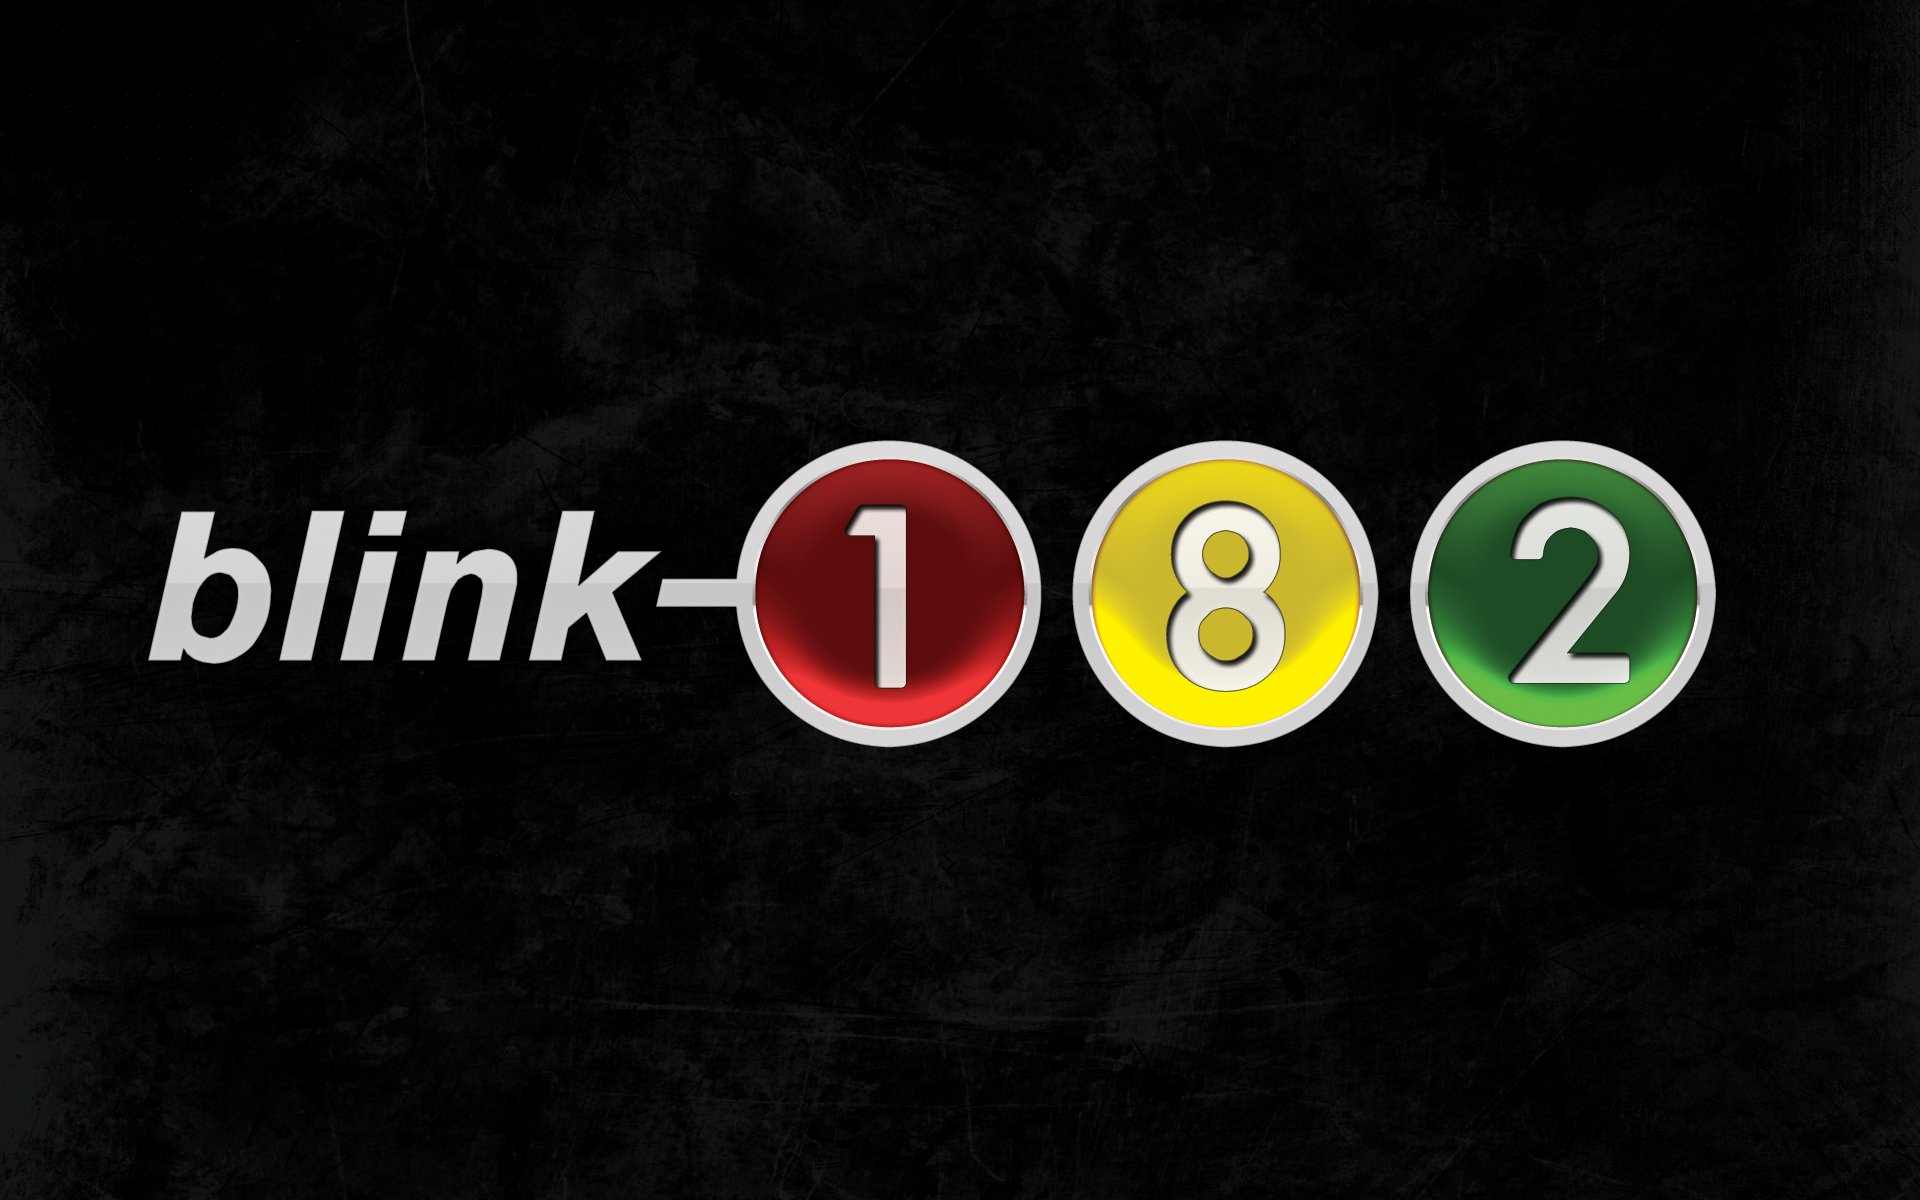 Blink 182 Logo Wallpaper - WallpaperSafari